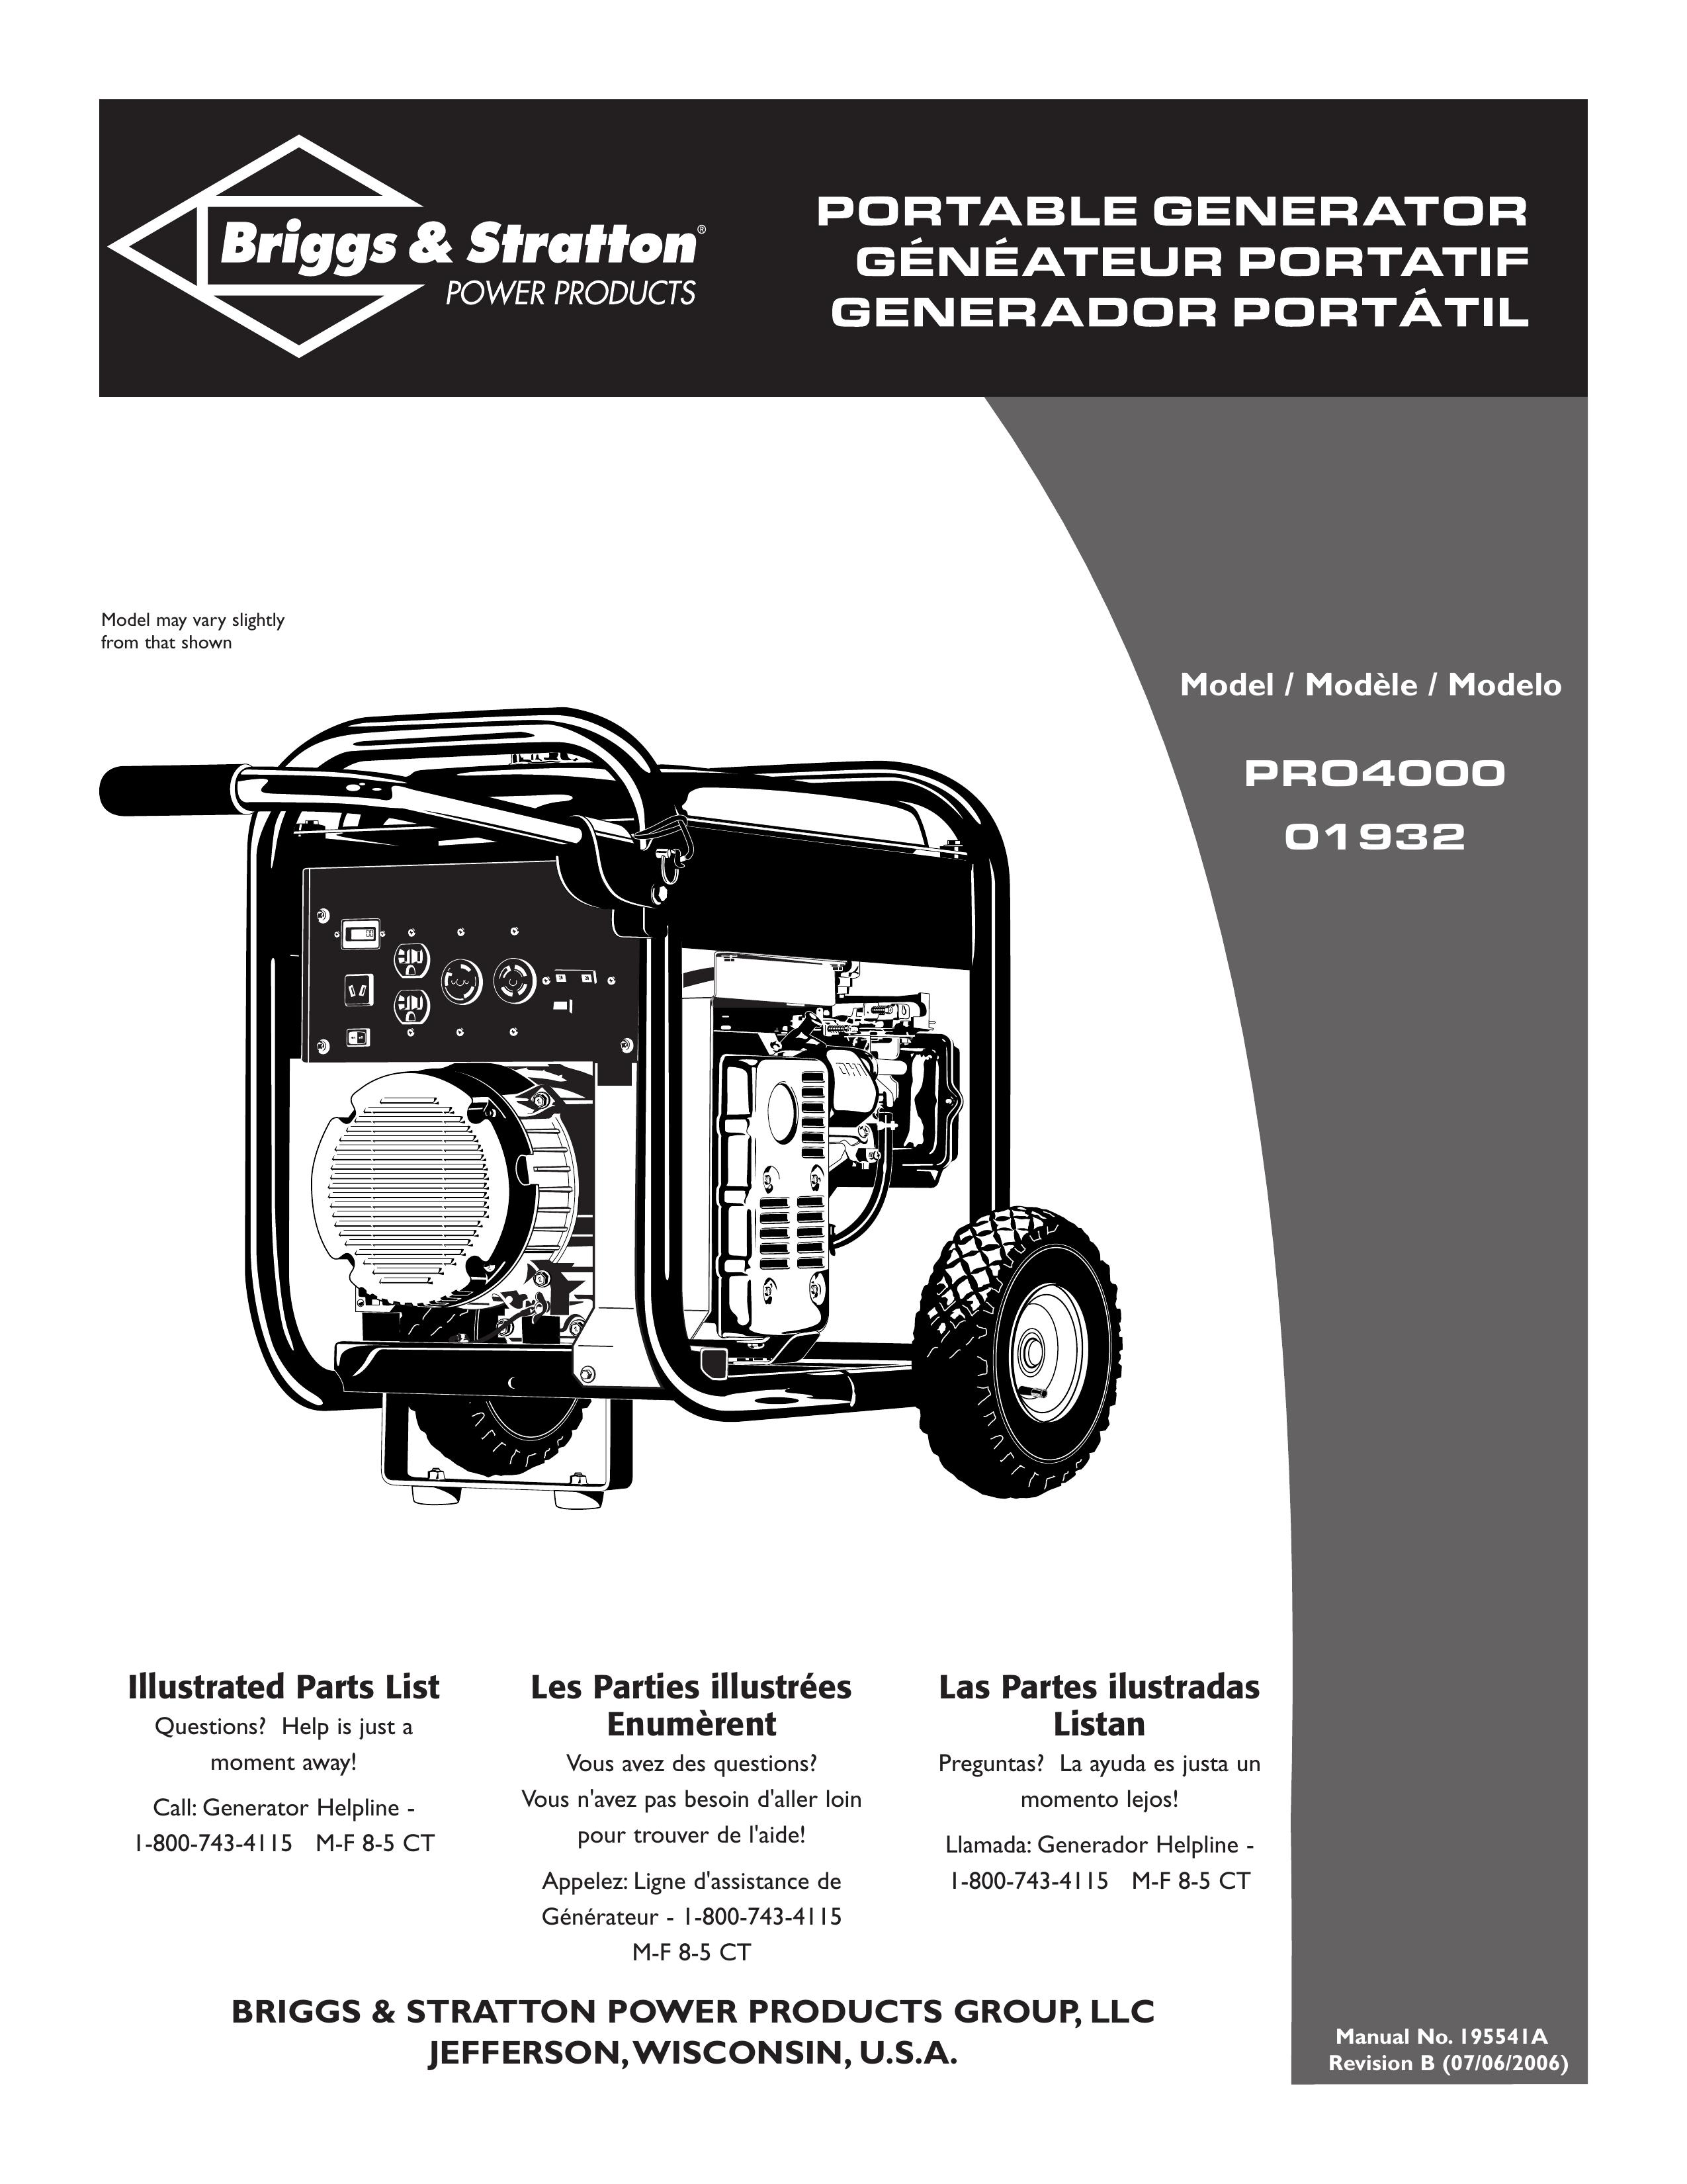 Briggs & Stratton 01932 Portable Generator User Manual